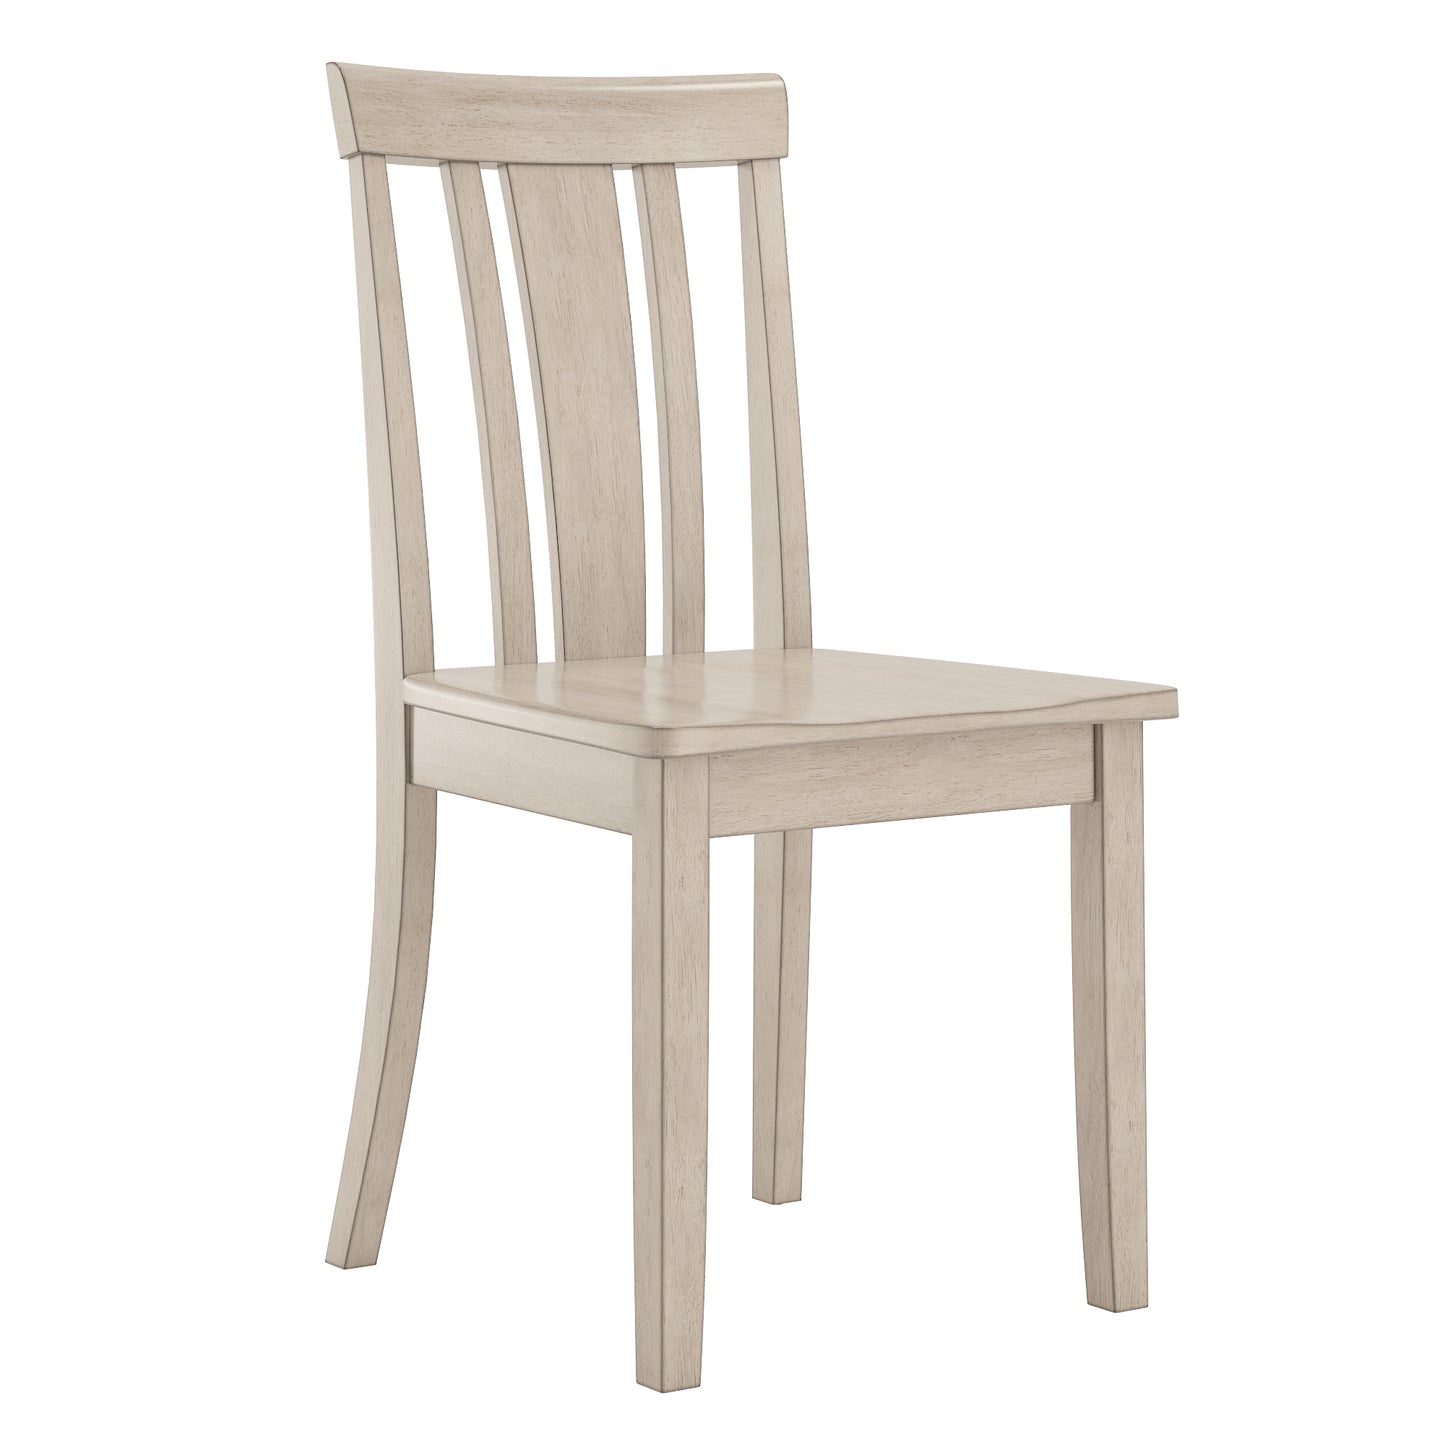 60-inch Rectangular Antique White Finish Dining Set - Slat Back Chairs, 6-Piece Set